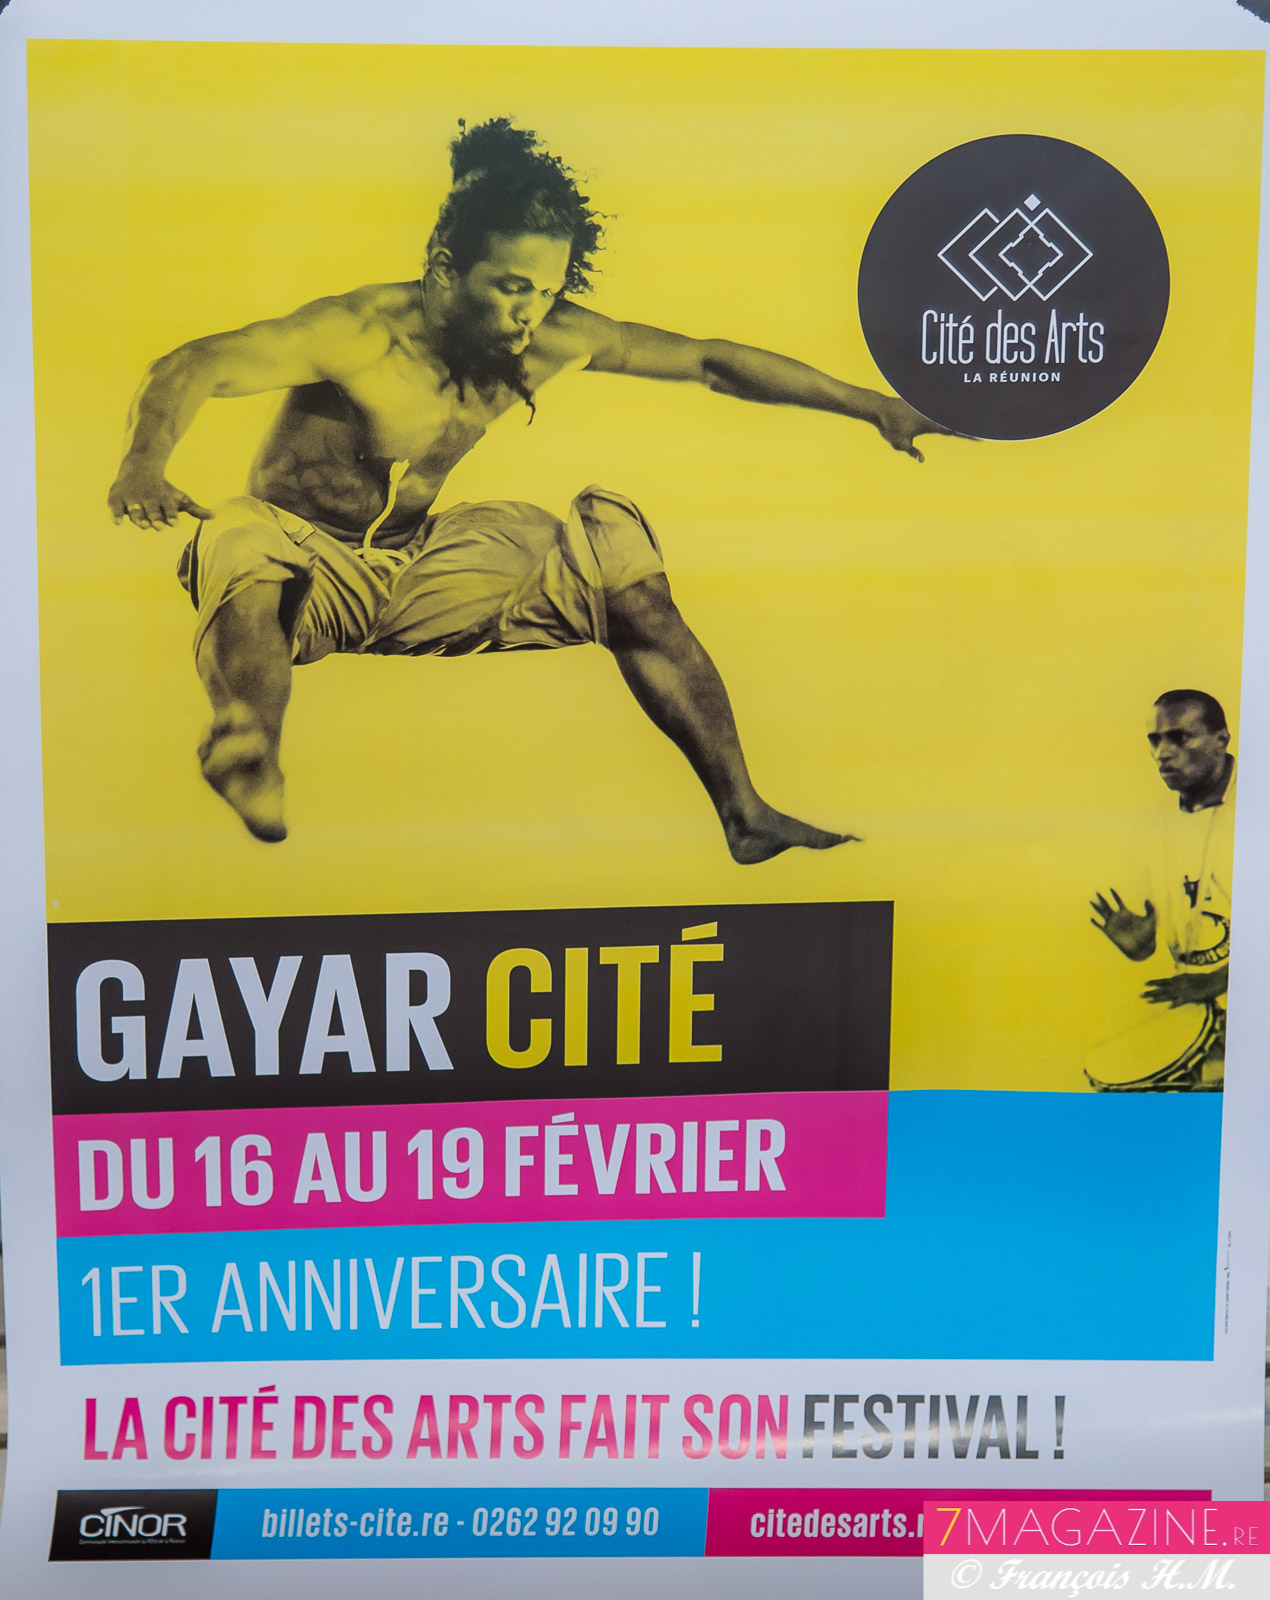 Gayar Cité: un festival pour l'anniversaire de la Cité des Arts